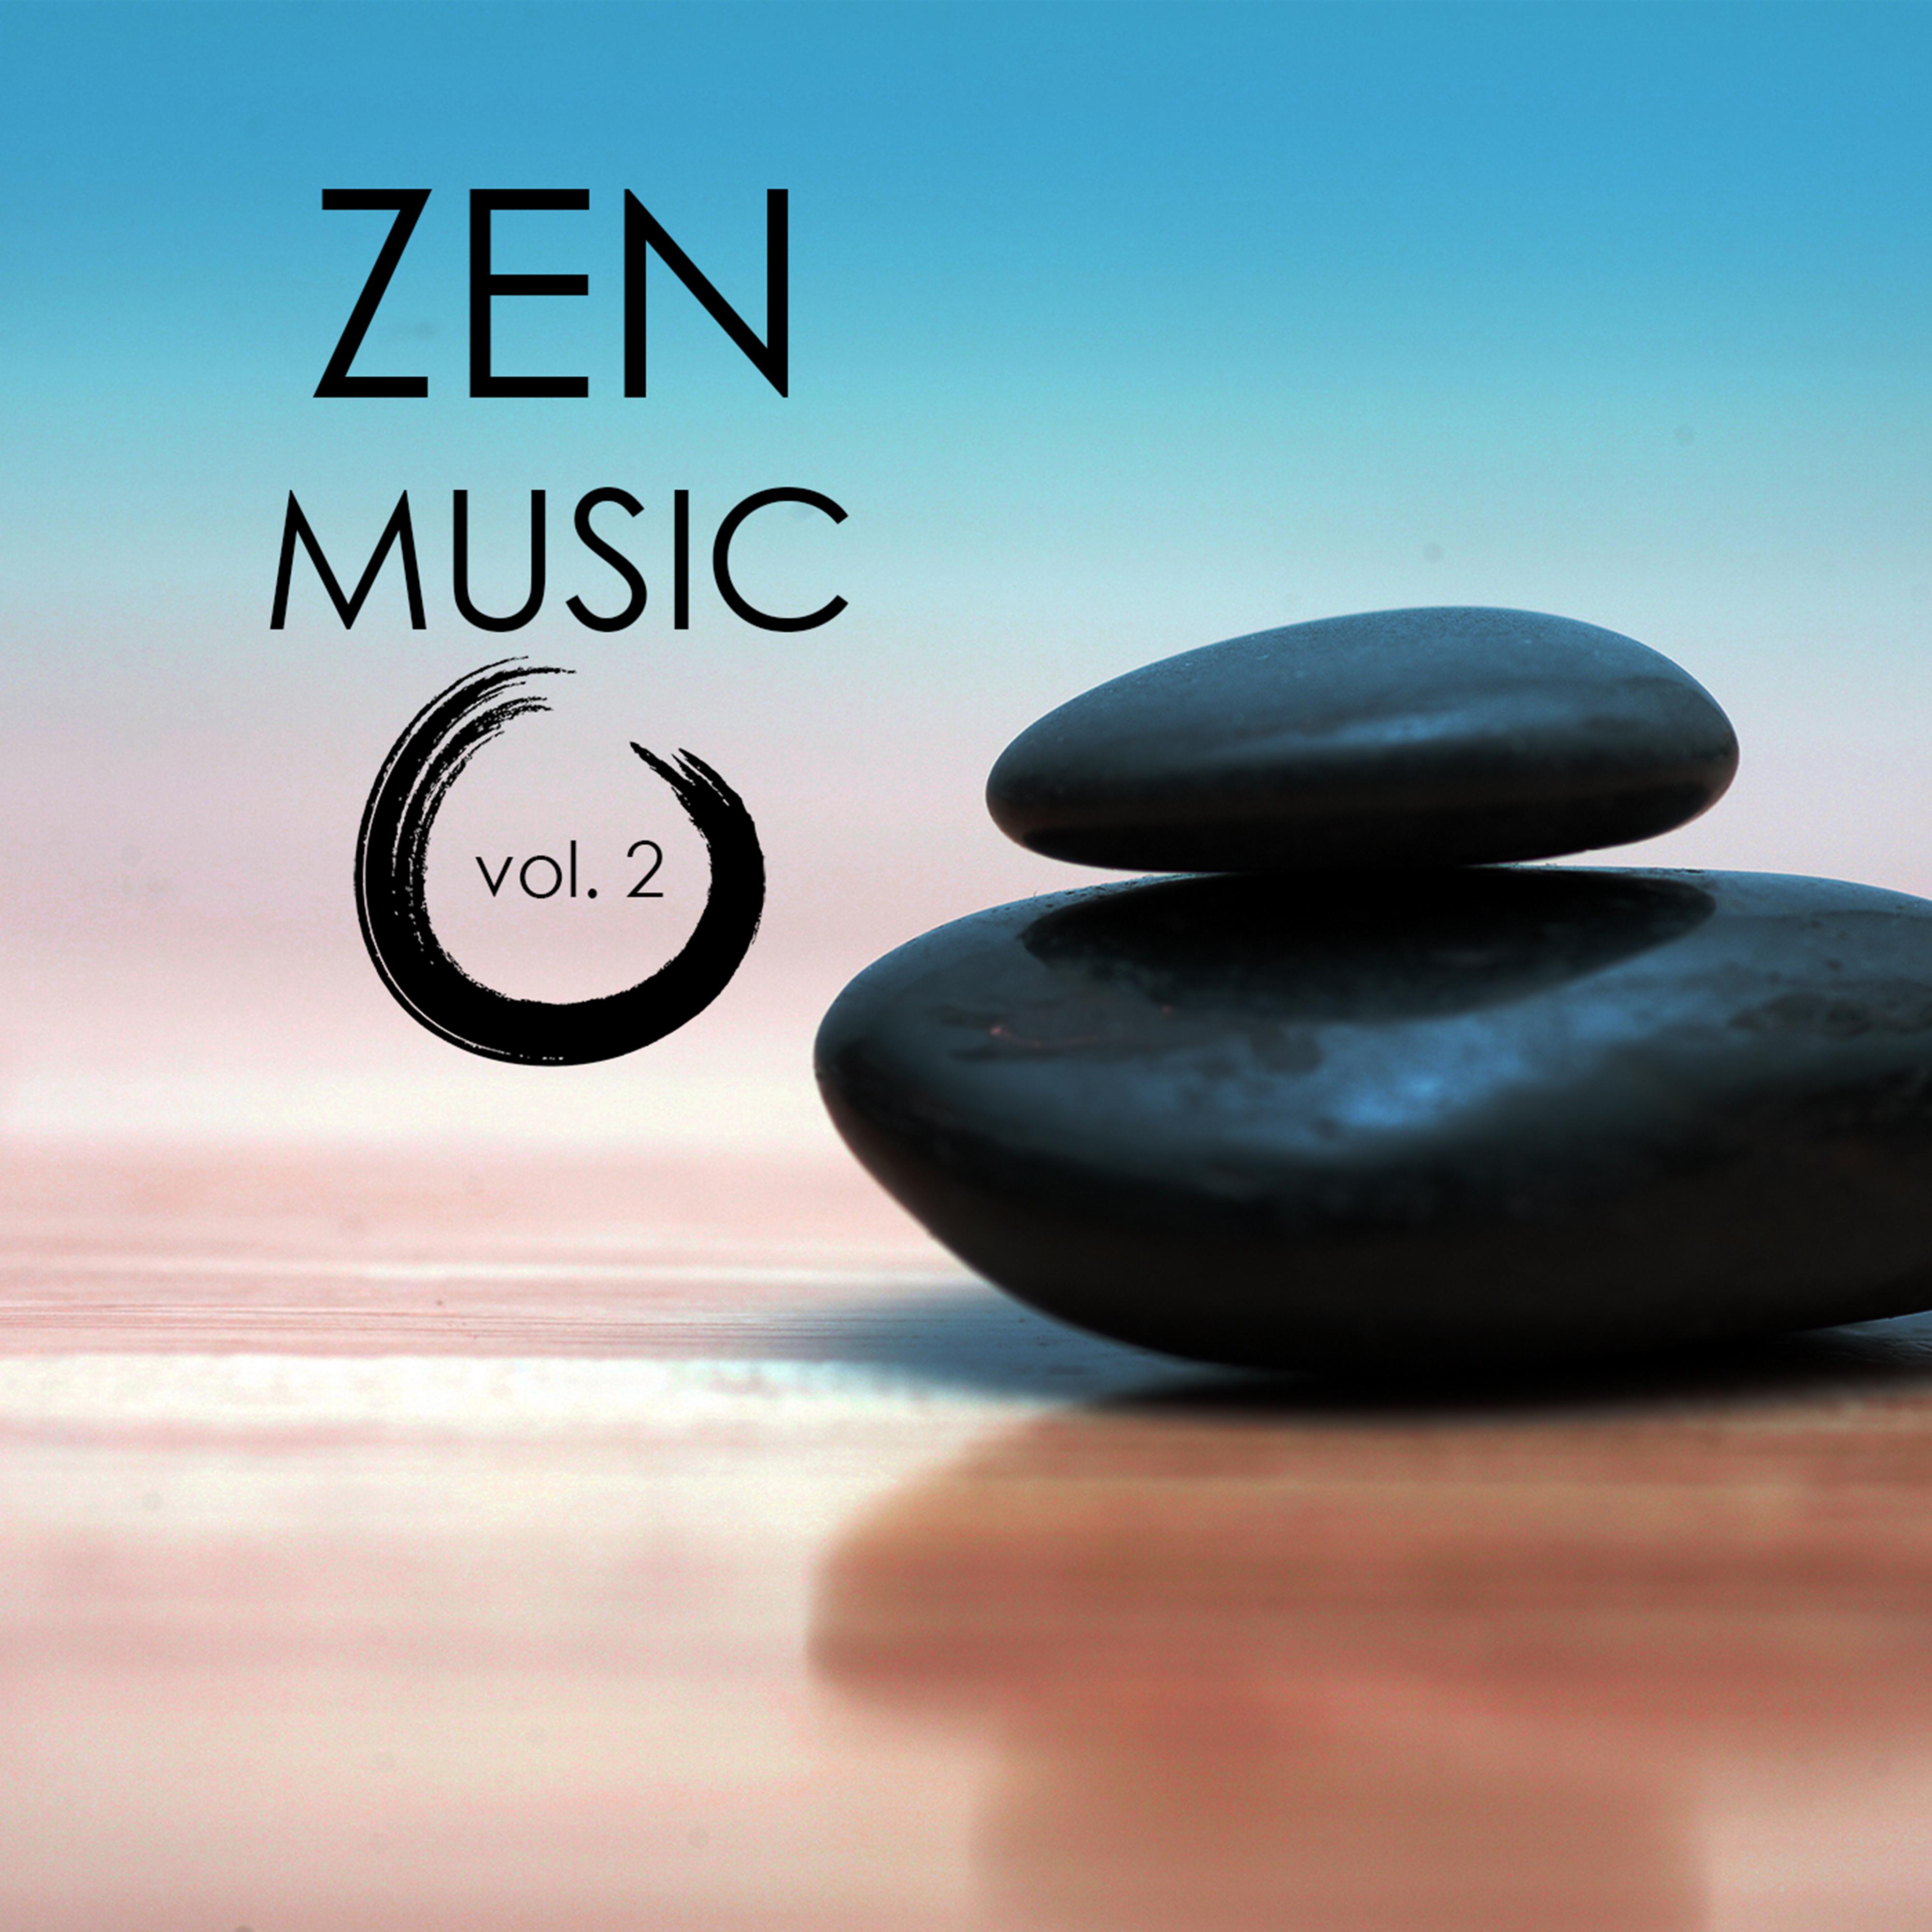 Zen Garden of Peace